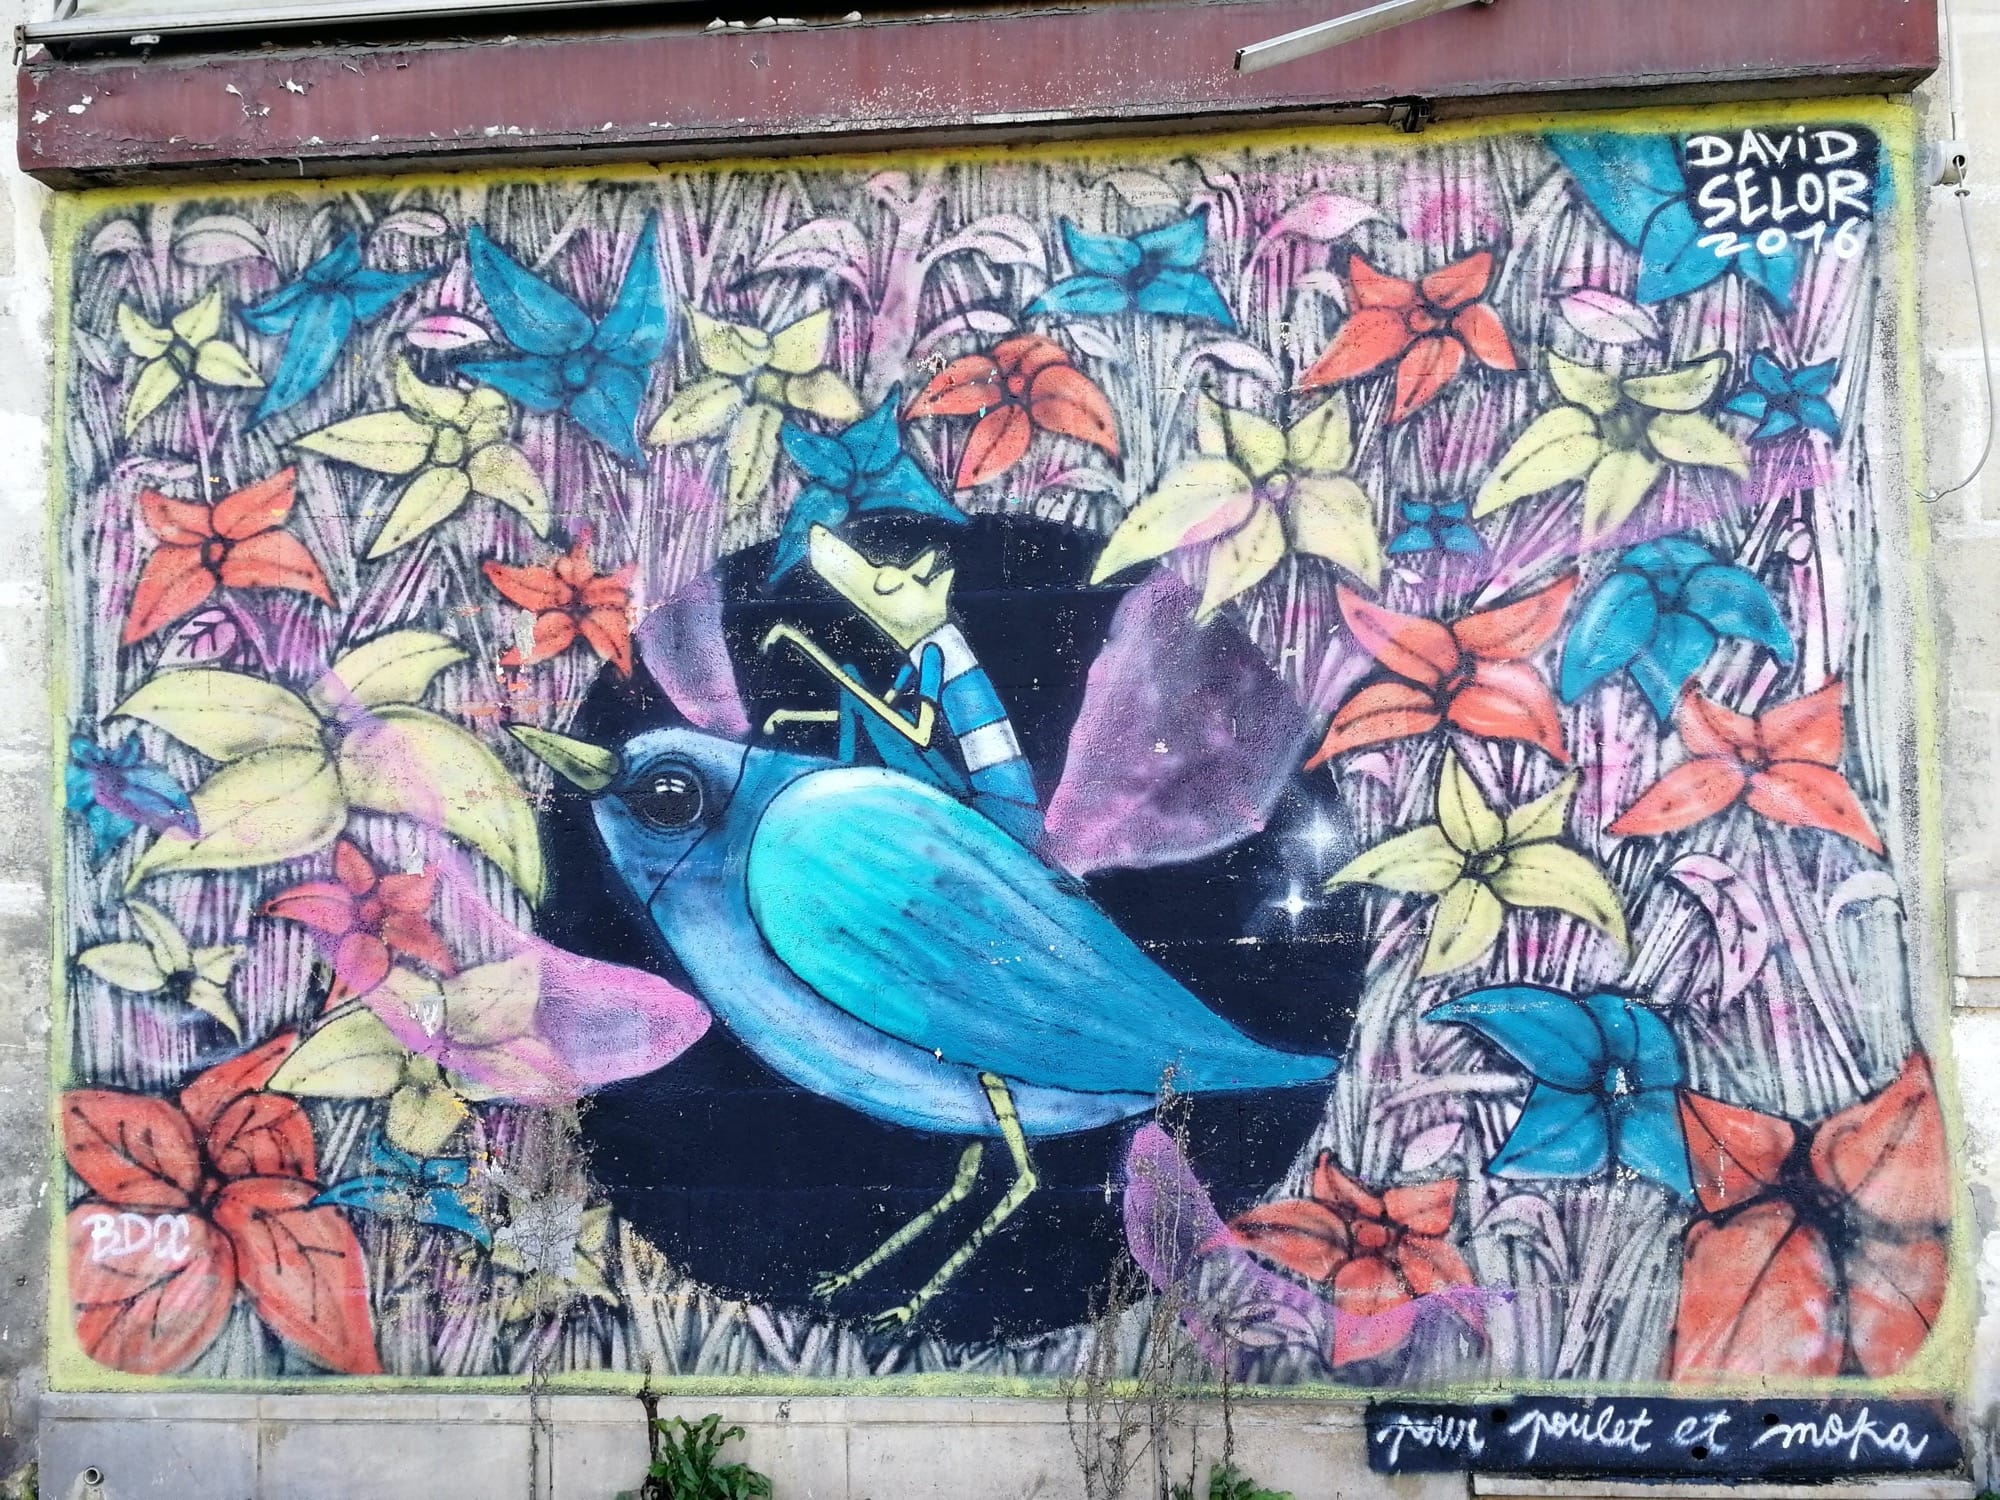 Graffiti 799 Pour poulet et moka de Selor capturé par Rabot à Bordeaux France